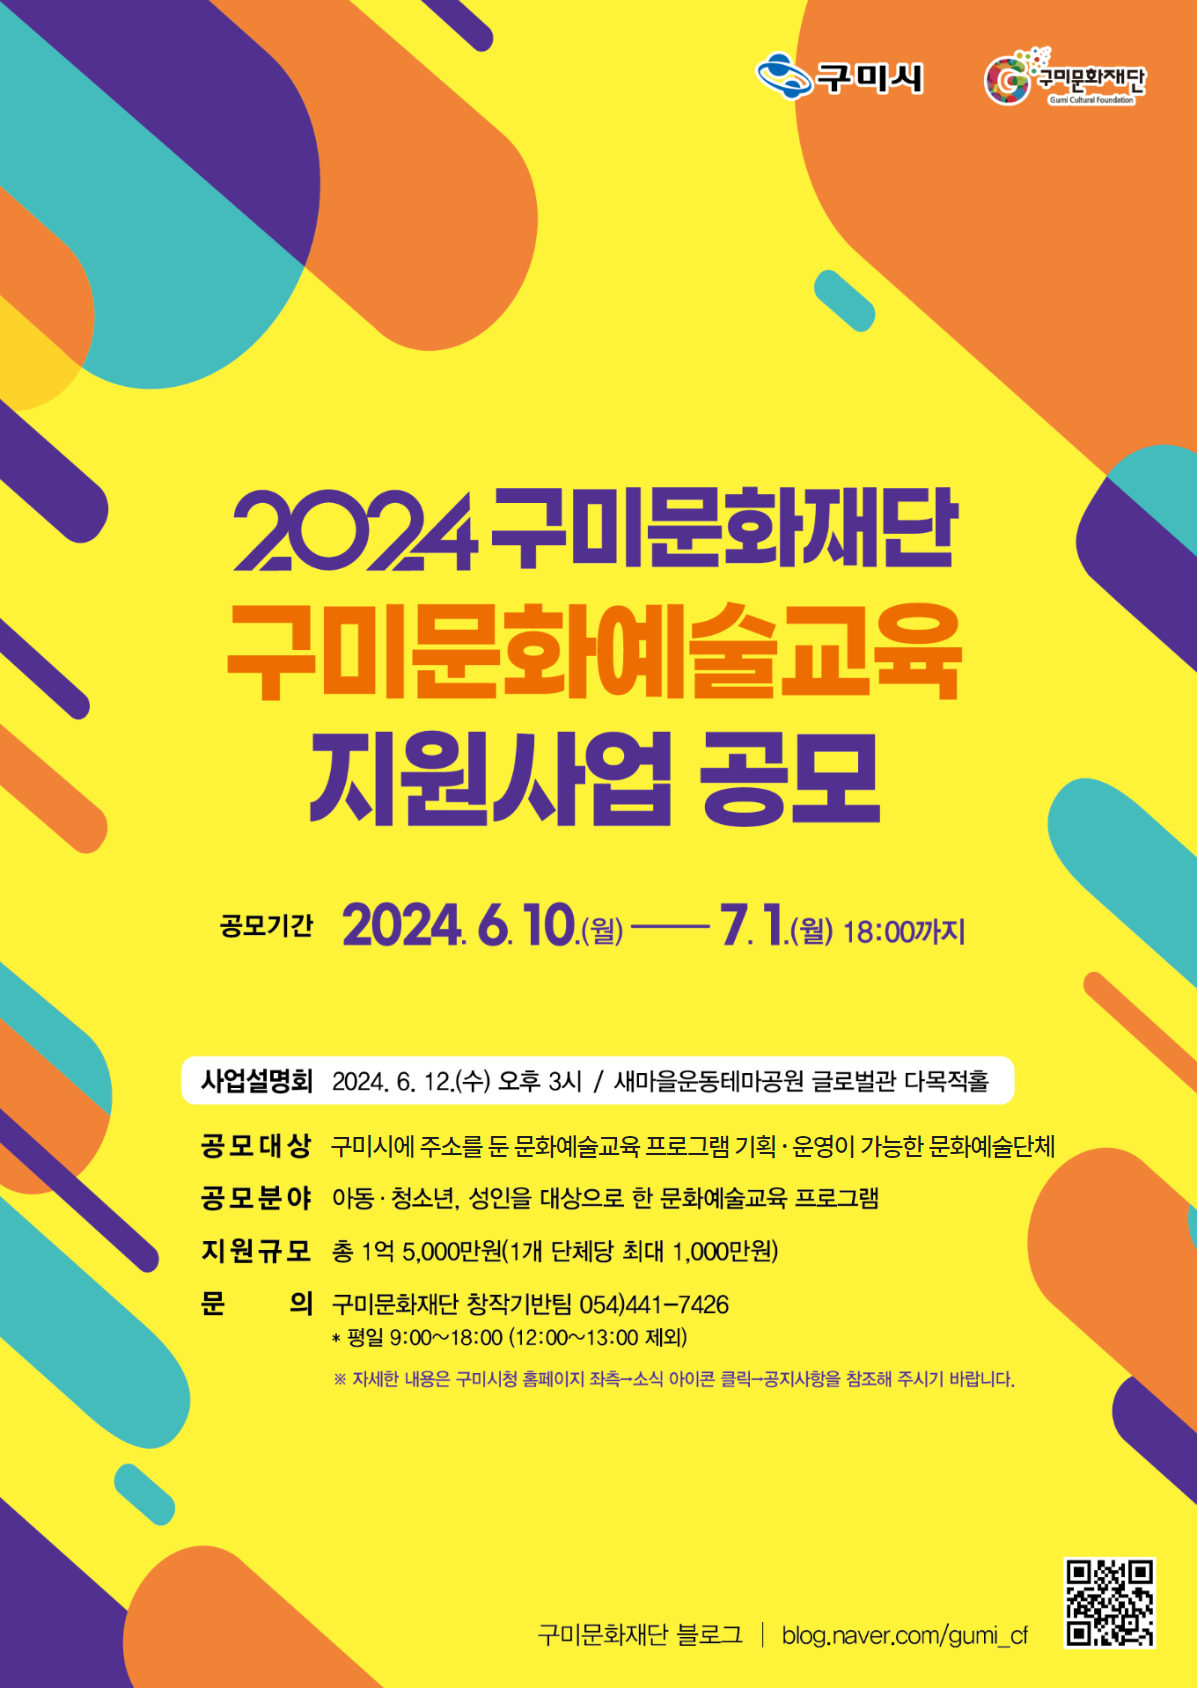 2024 구미문화재단 구미 문화예술교육지원사업 공모 (수정공고 24. 6. 14.)